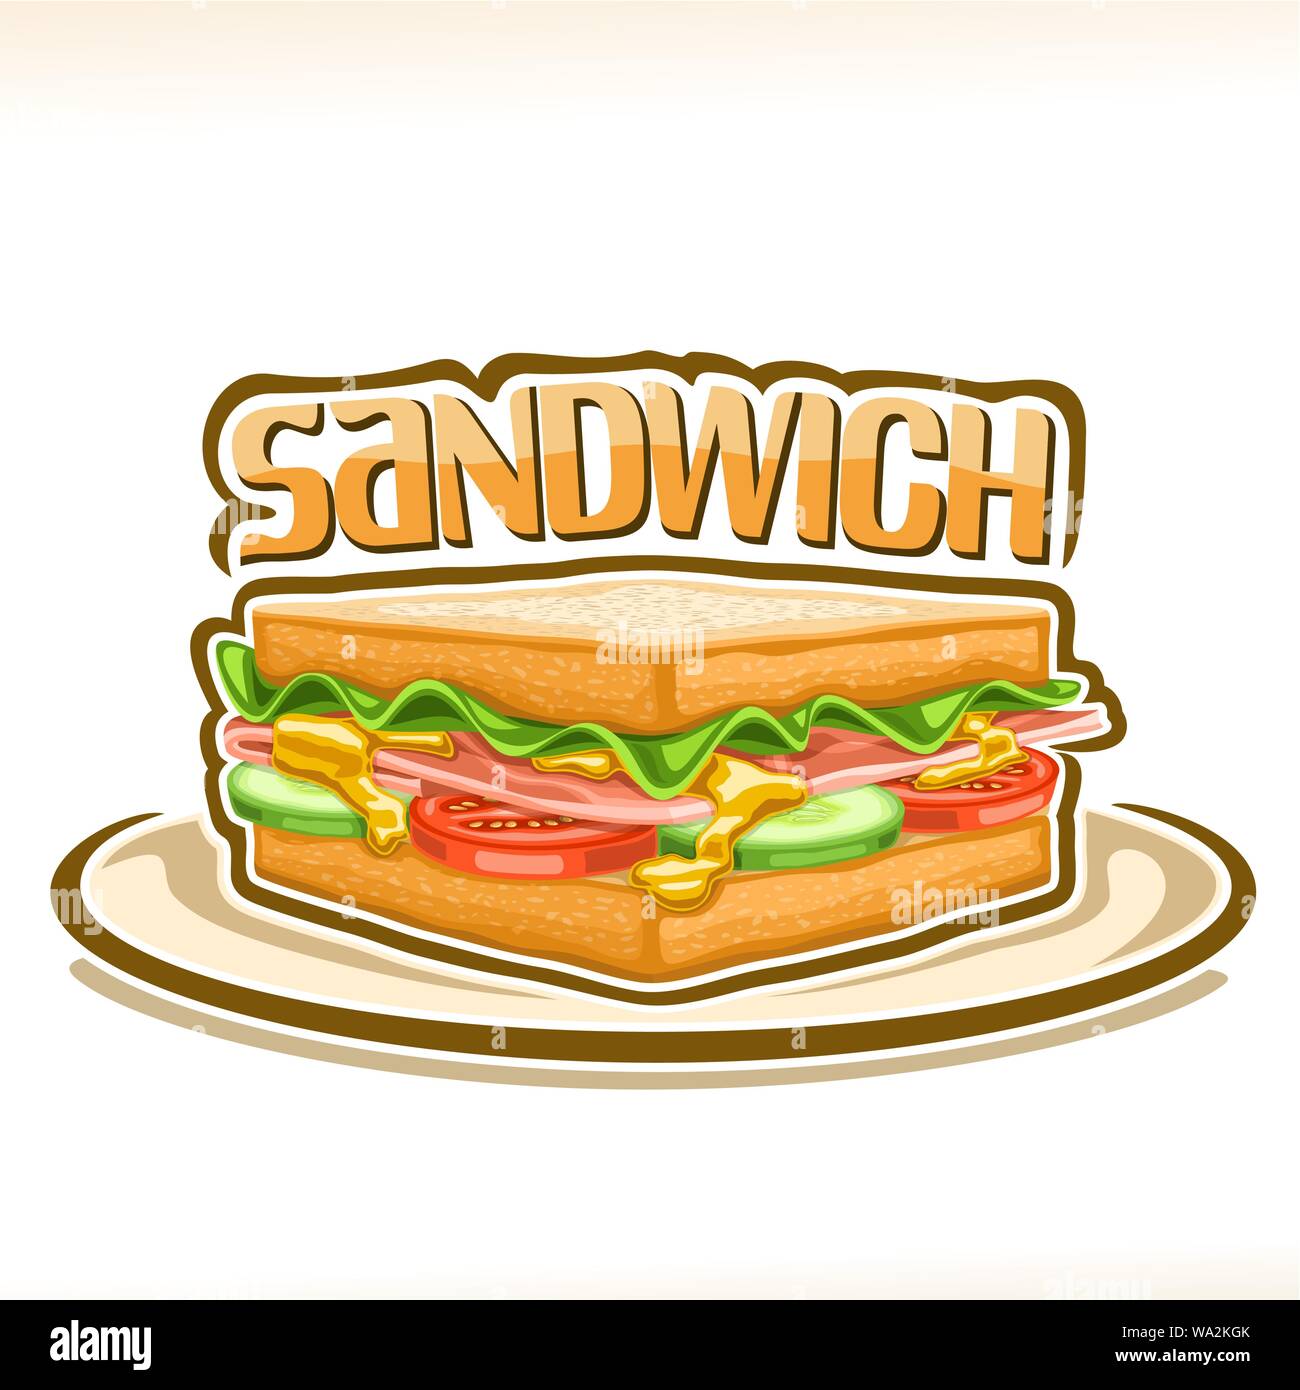 Vektor Plakat für Sandwich, zwischen Quadrat scheiben Weizenbrot frischem Salat, Schinken, Tomaten und Gurken, ursprünglichen Schrifttyp für Word Sandwich, Stock Vektor